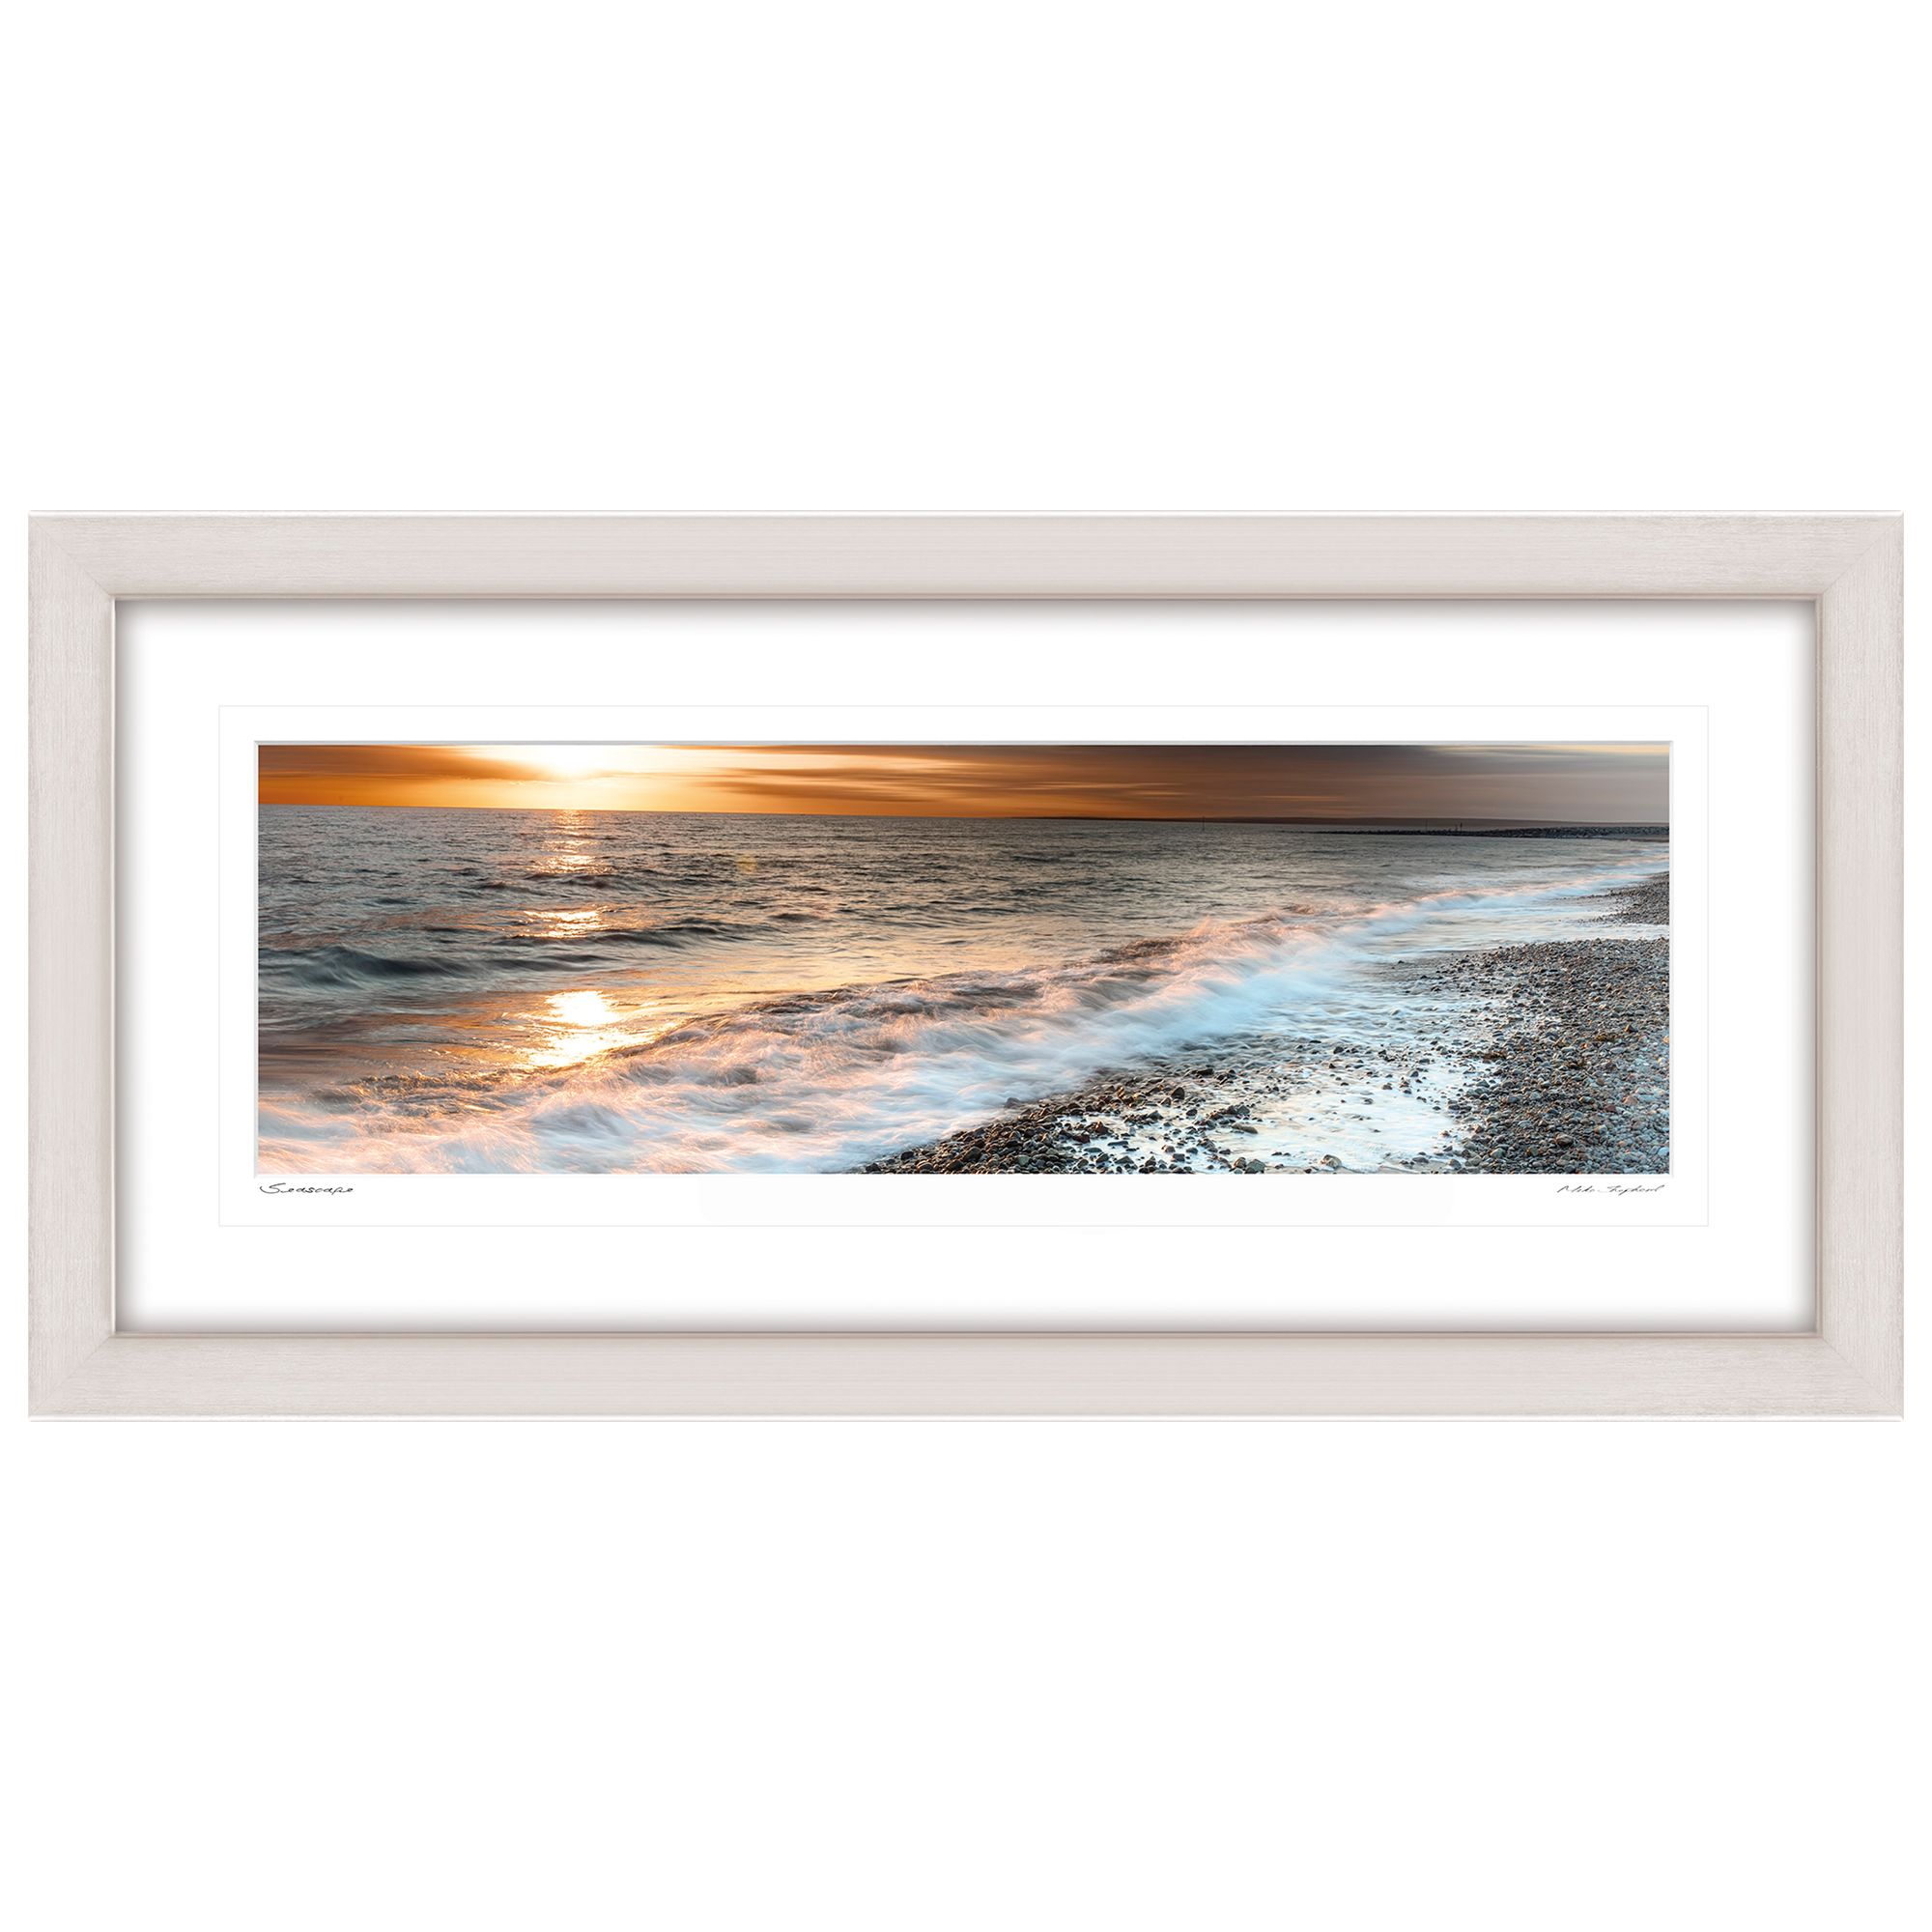 Buy Mike Shepherd - Seascape Framed Print, 52 x 107cm | John Lewis